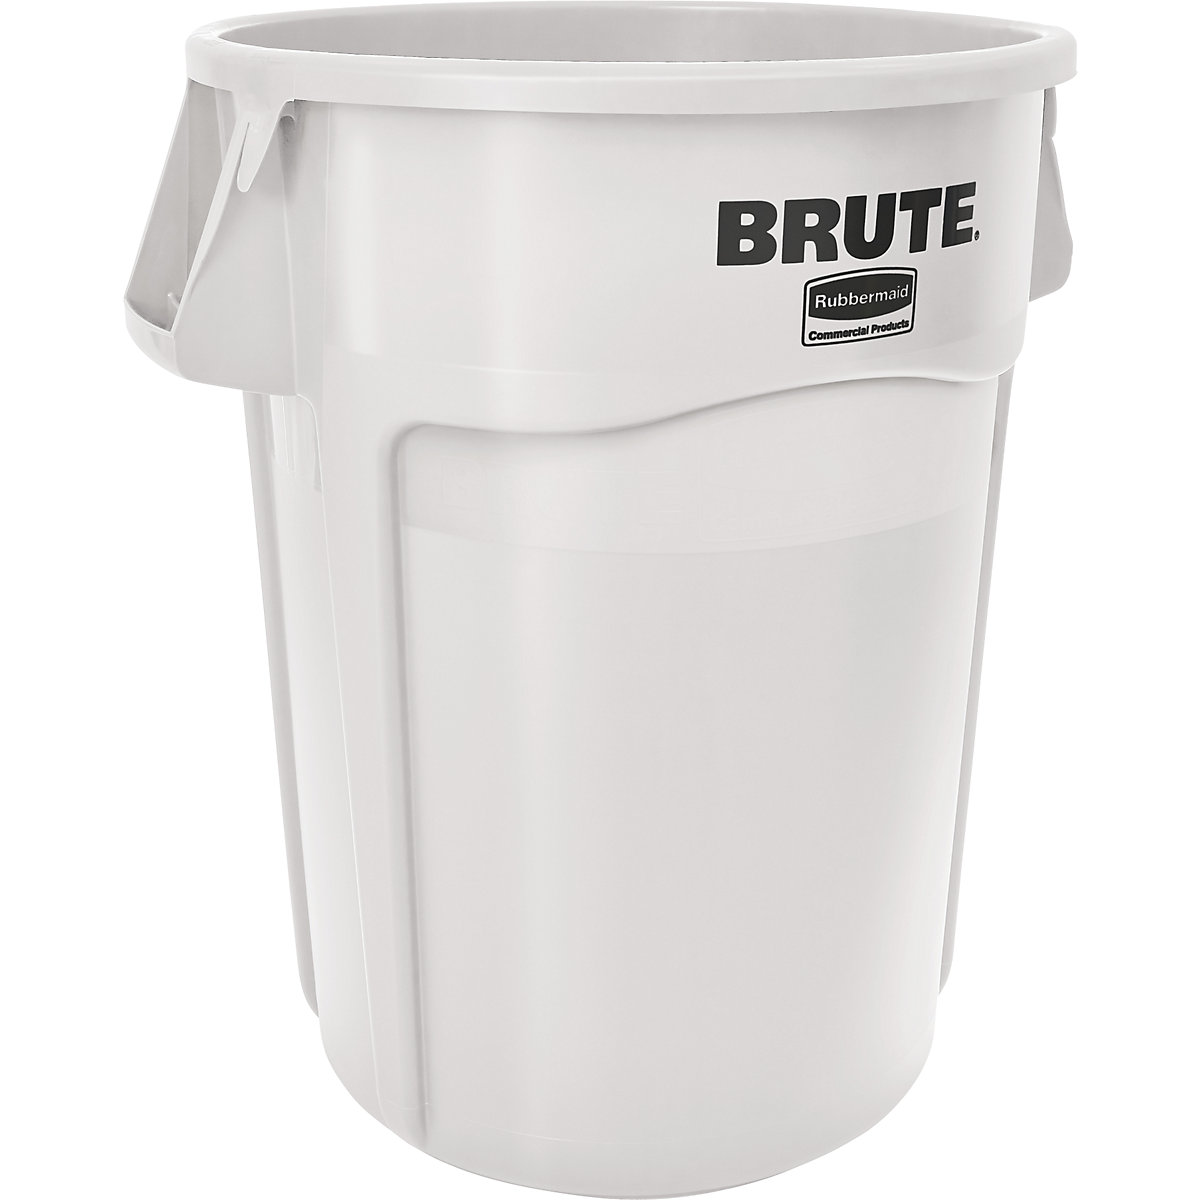 Univerzalni kontejner BRUTE®, okrugli – Rubbermaid, sadržaj 166 l, u bijeloj boji-14